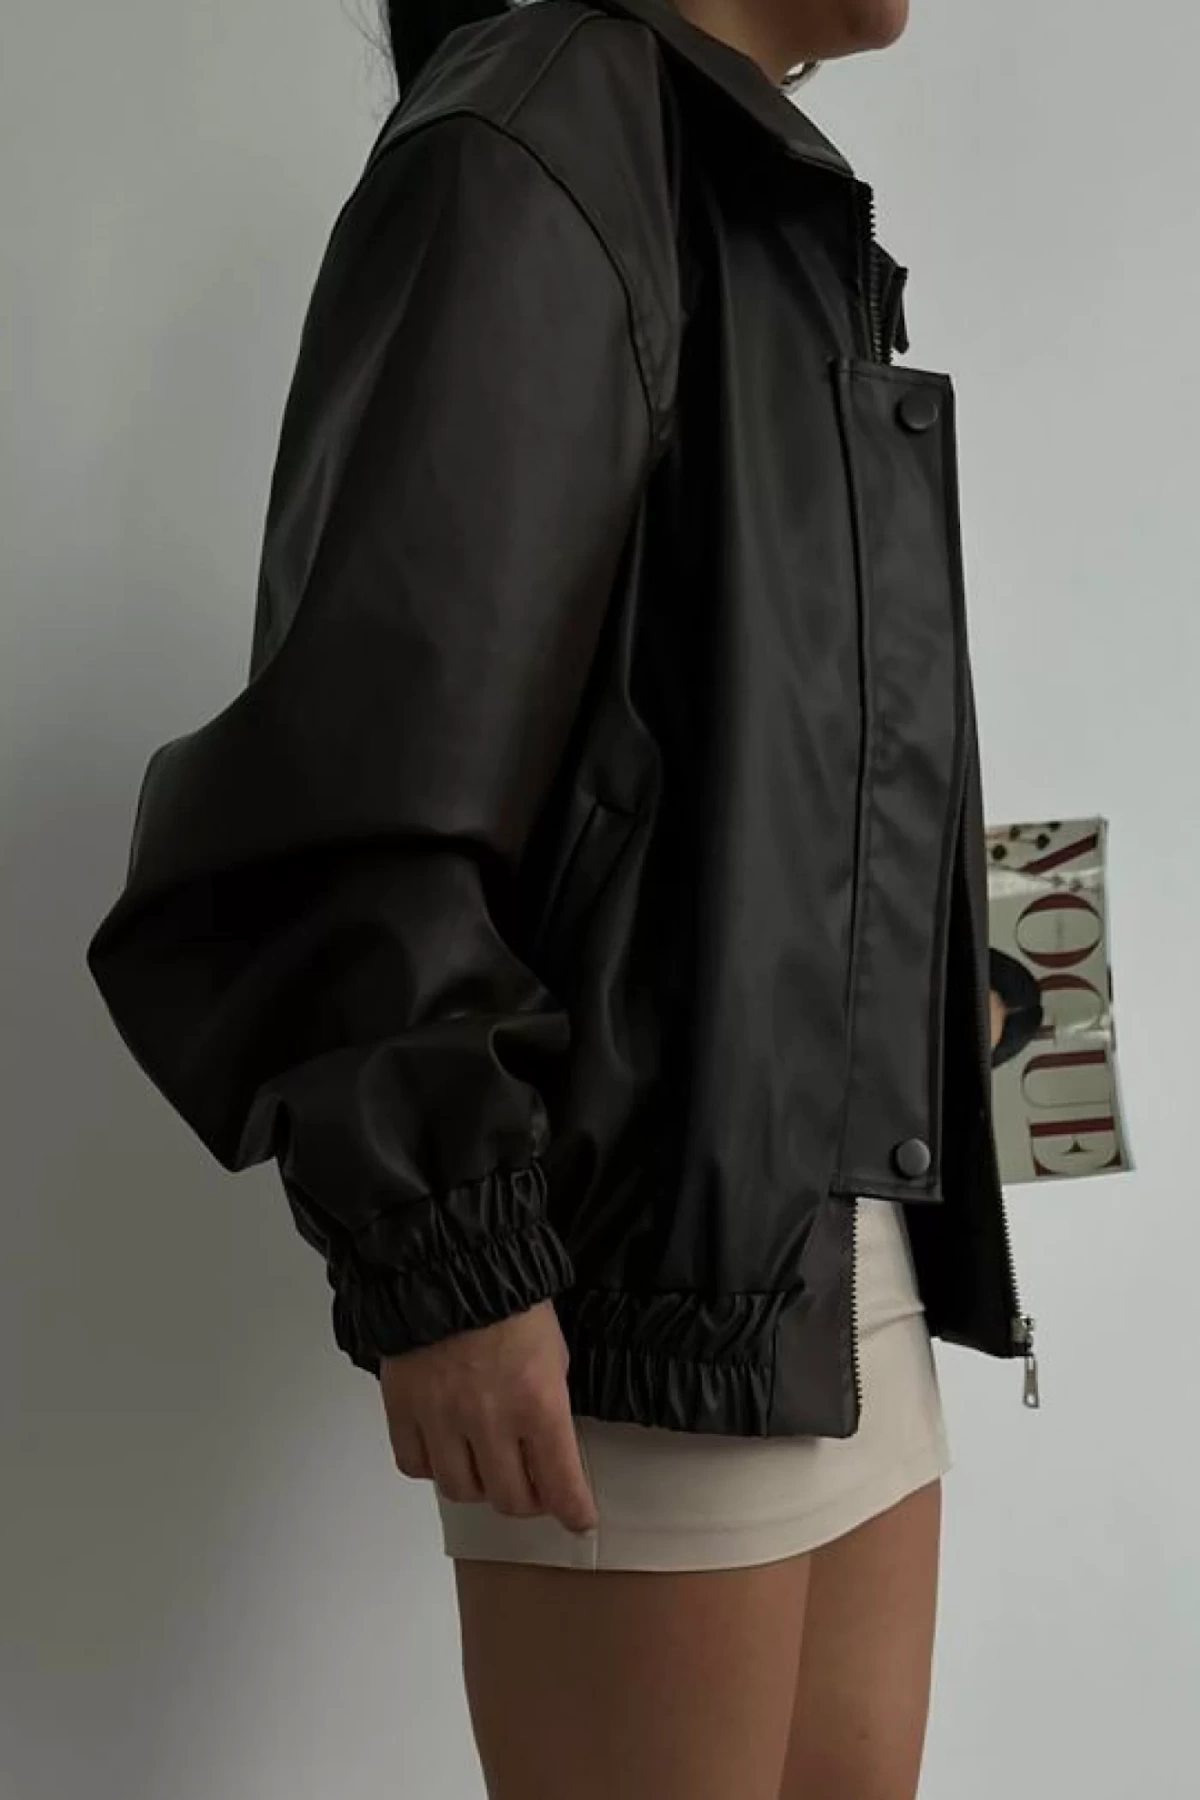 Flap Leather Jacket